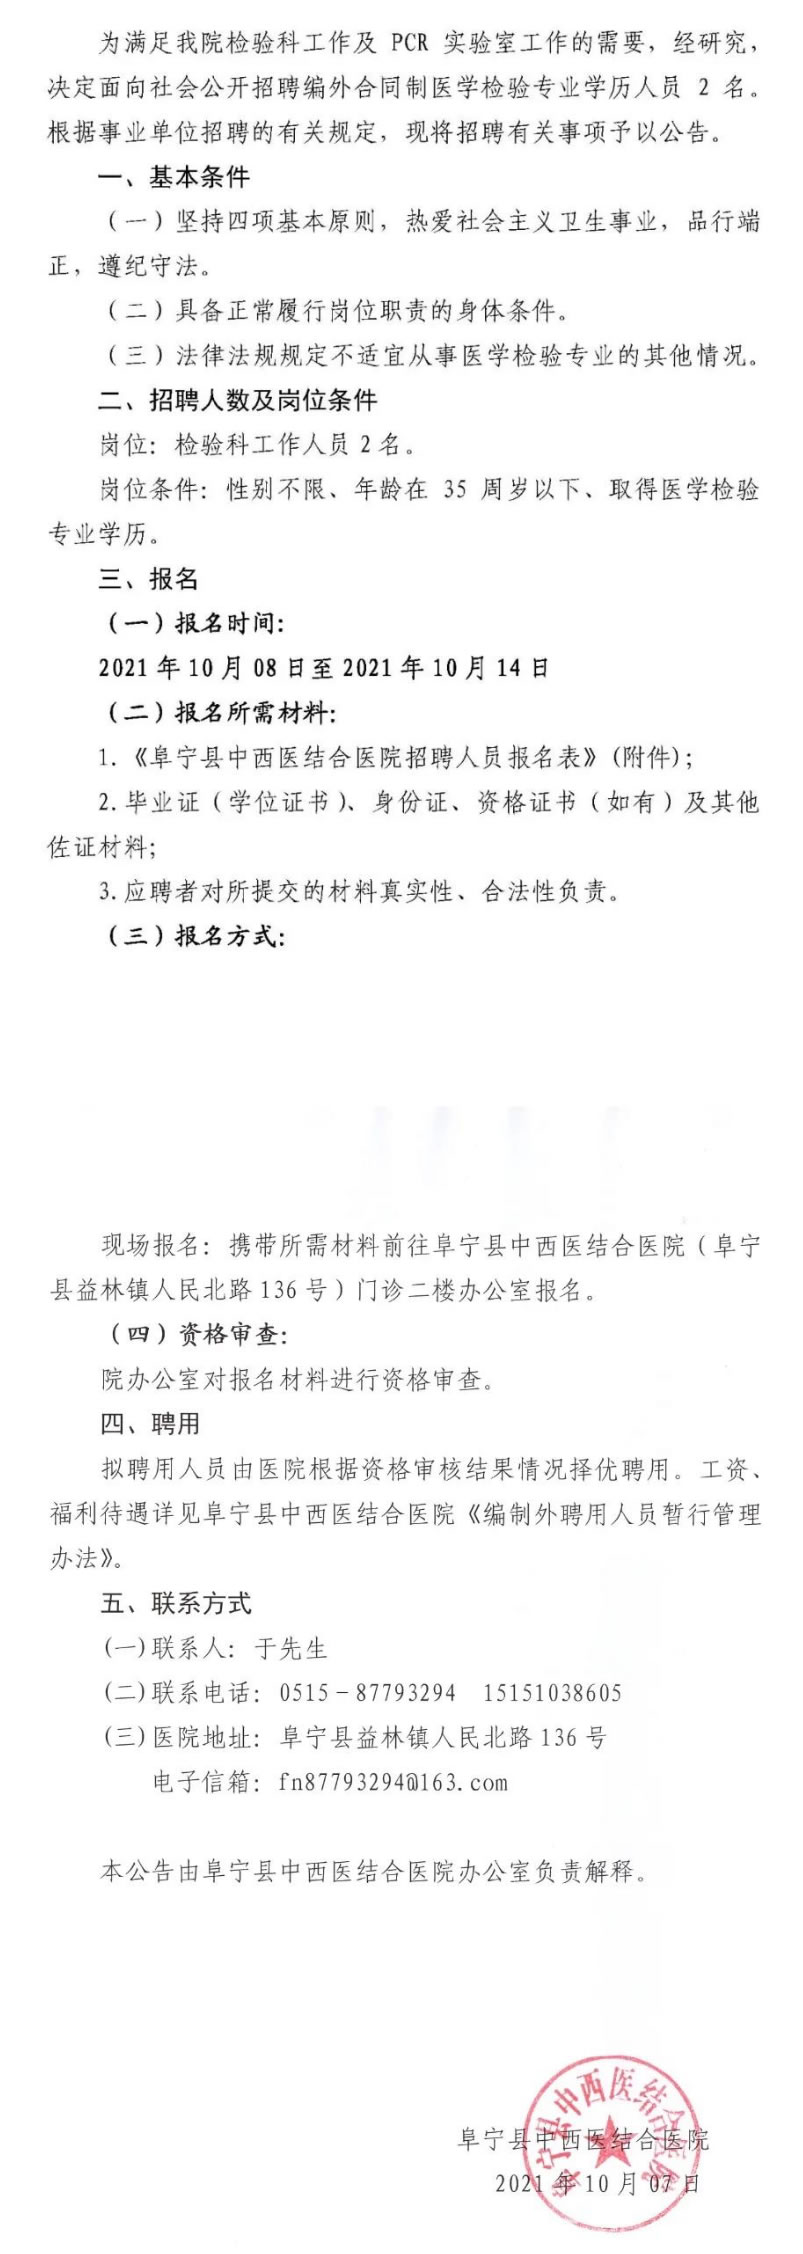 阜宁县中西医结合医院招聘合同制医学检验人员2名